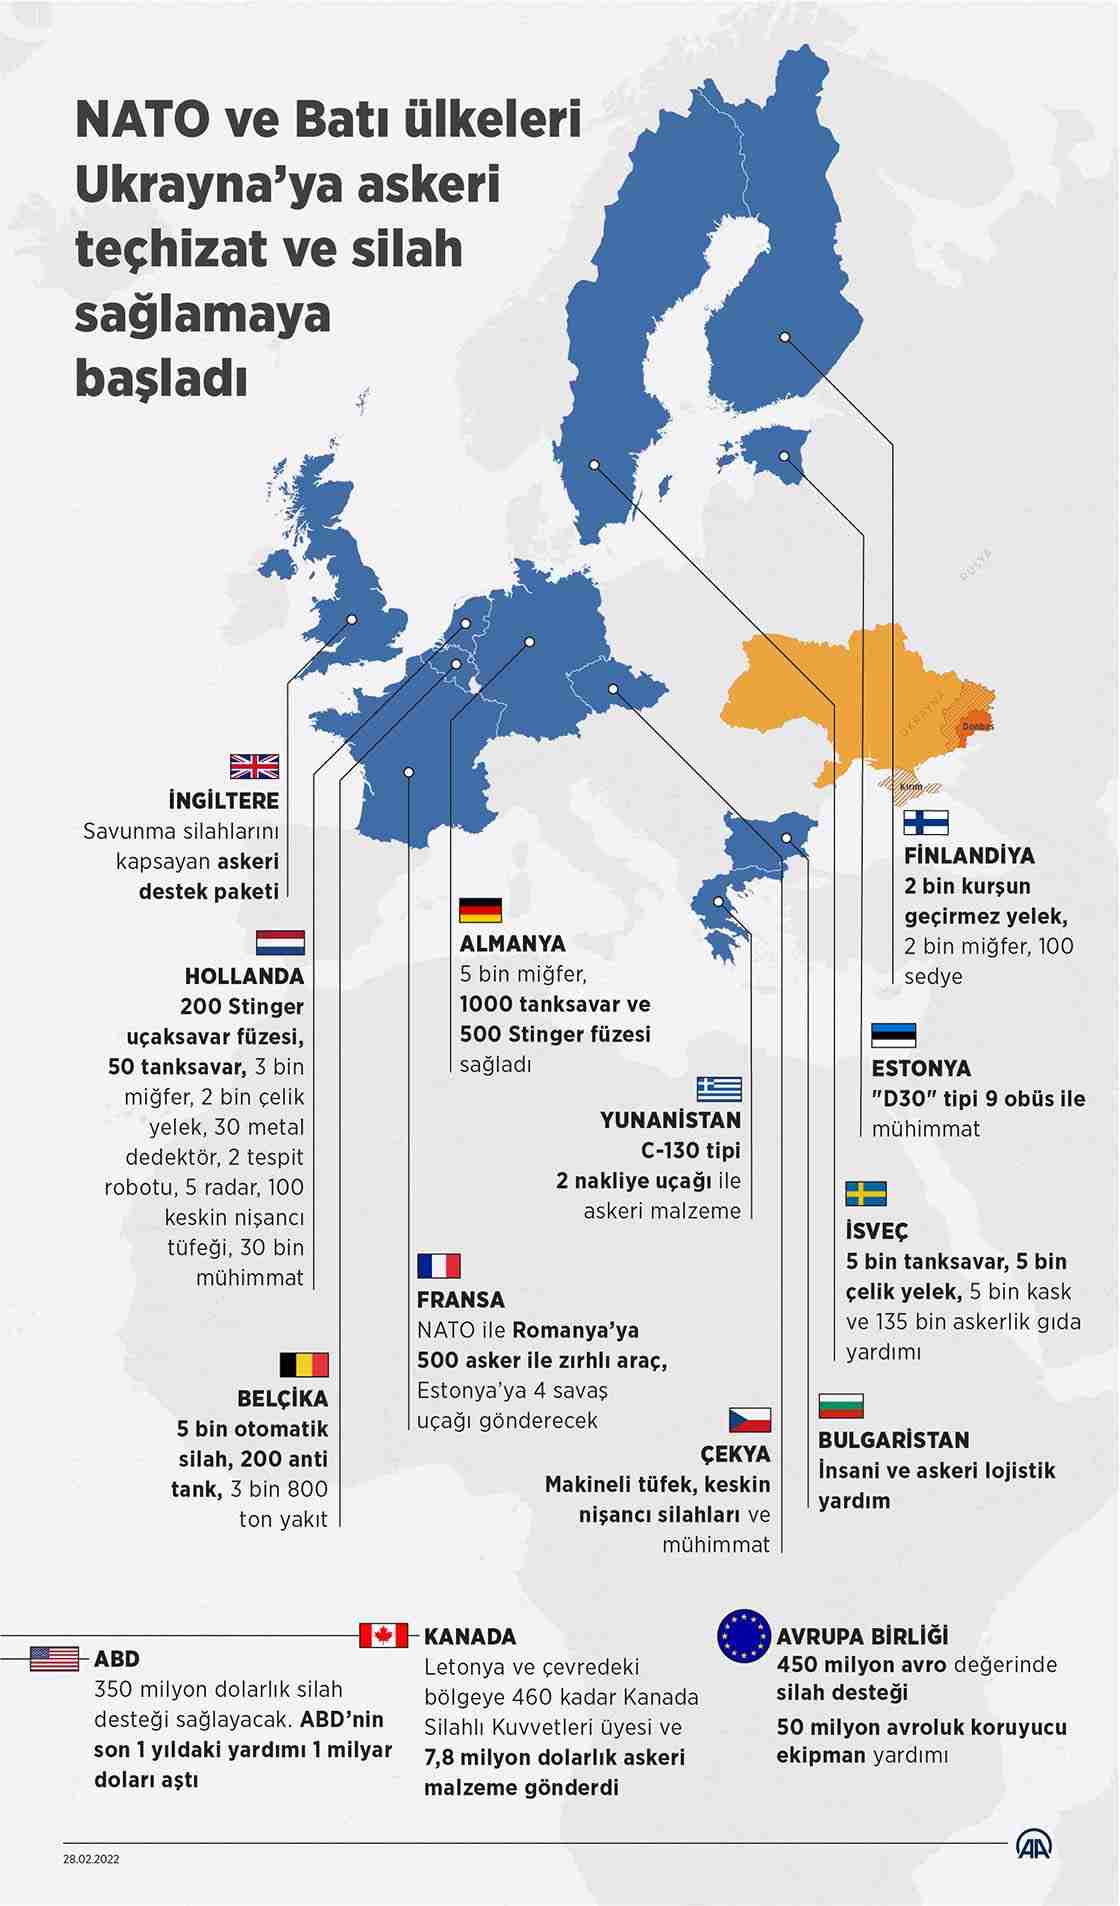 NATO ve Batı ülkelerinden, Ukrayna'ya askeri teçhizat ve silah desteği